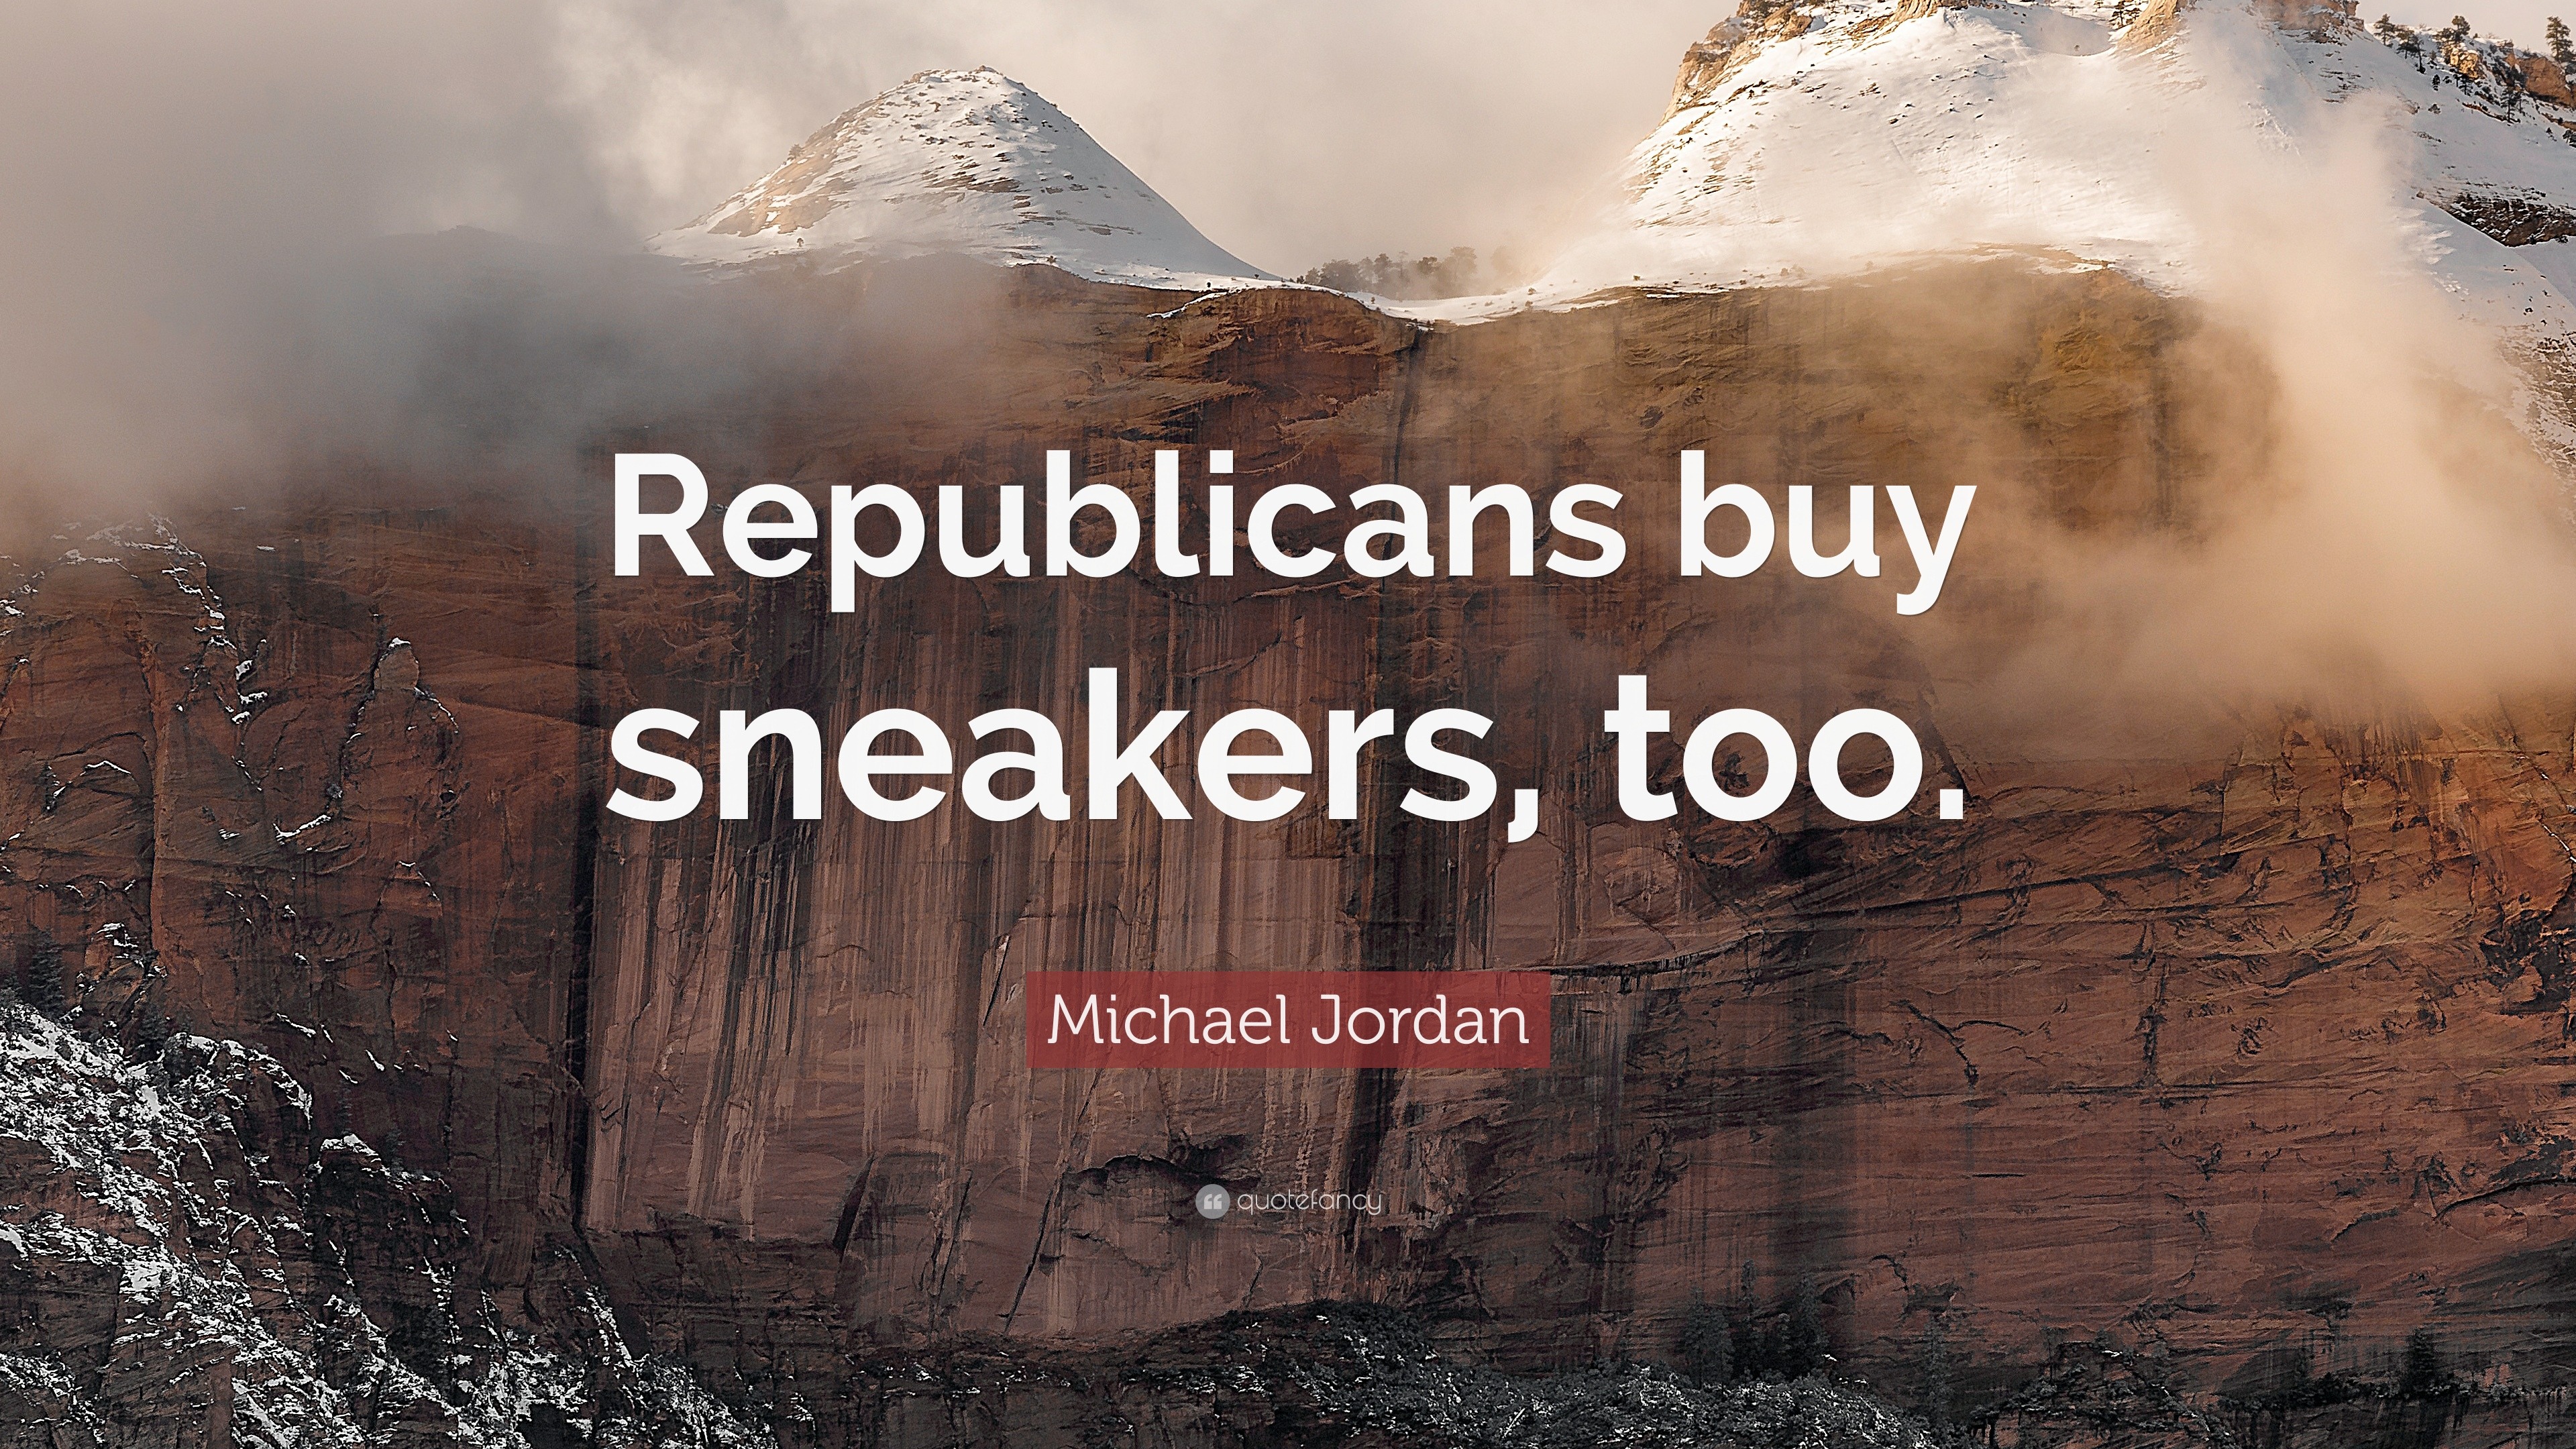 michael jordan republicans buy sneakers too